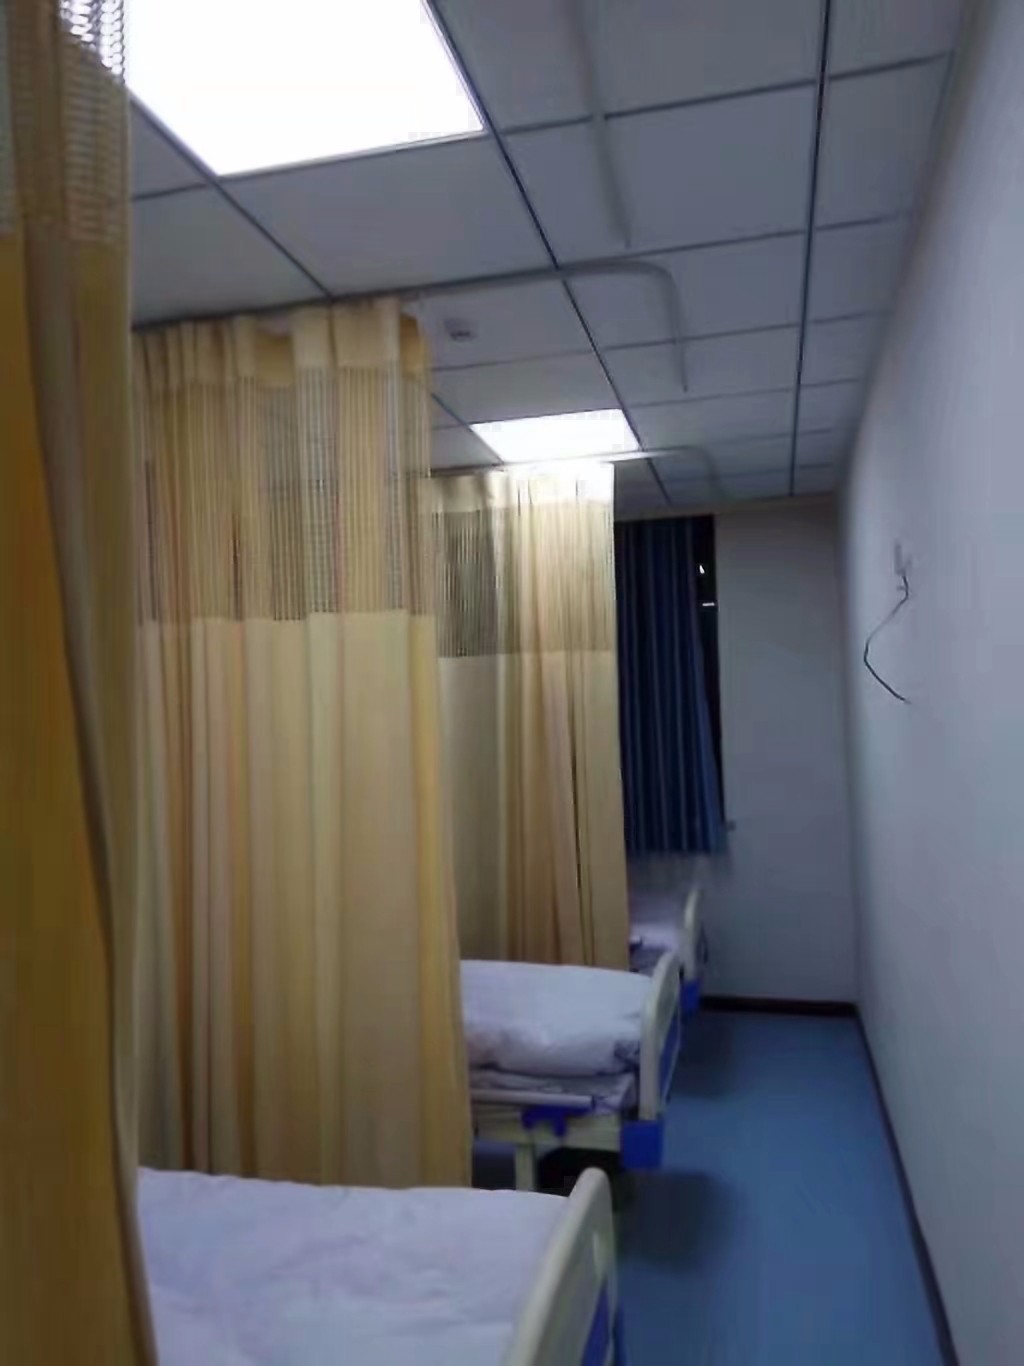 医用窗帘一样是丰富多彩,医院病床的最佳装饰